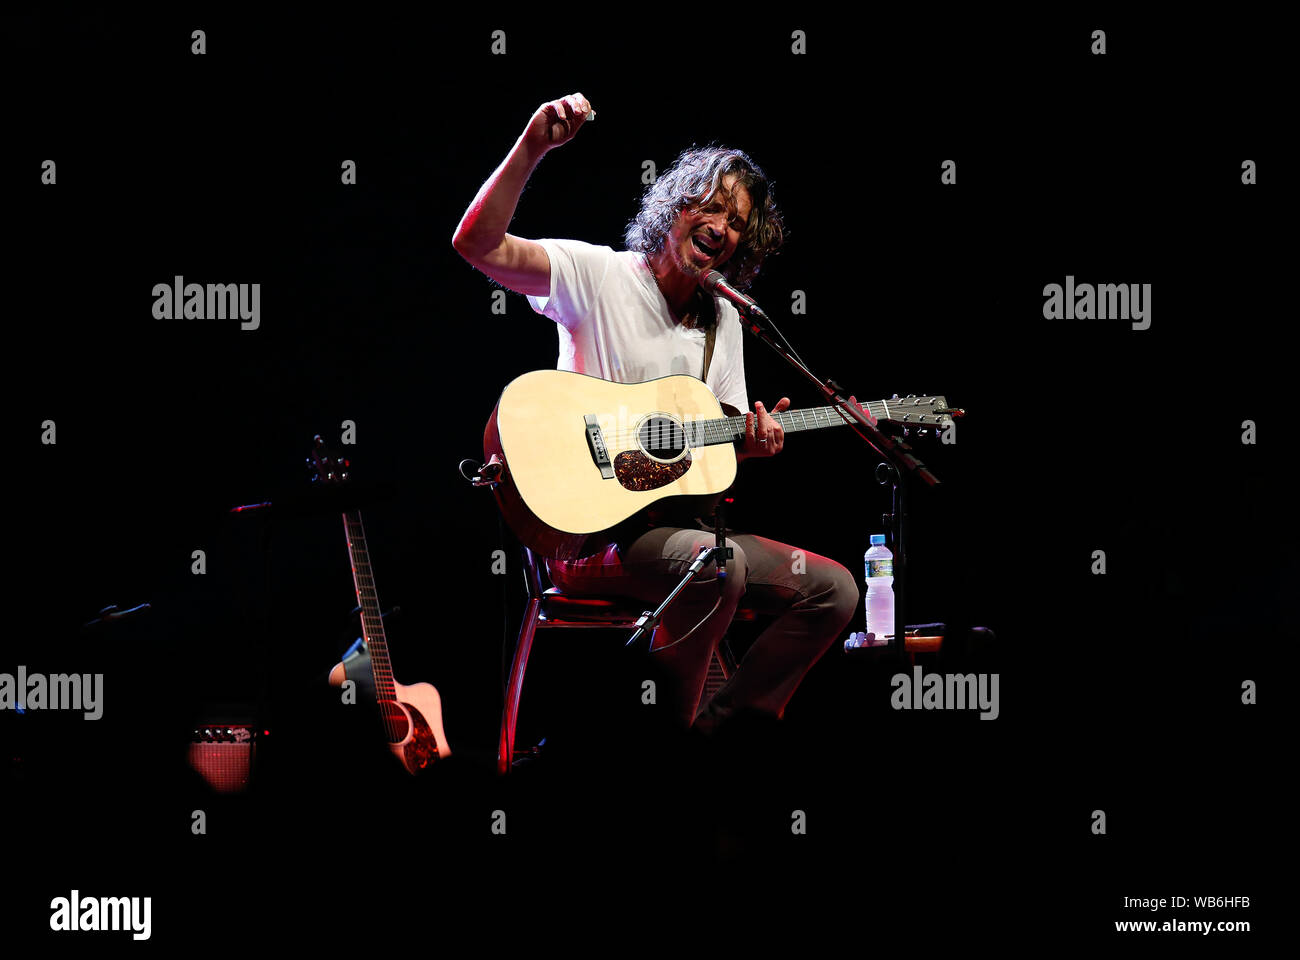 Rio de Janeiro, 15 giugno 2013. La cantante Cris Cornell durante il suo spettacolo al vivo Rio show house a Rio de Janeiro, Brasile Foto Stock